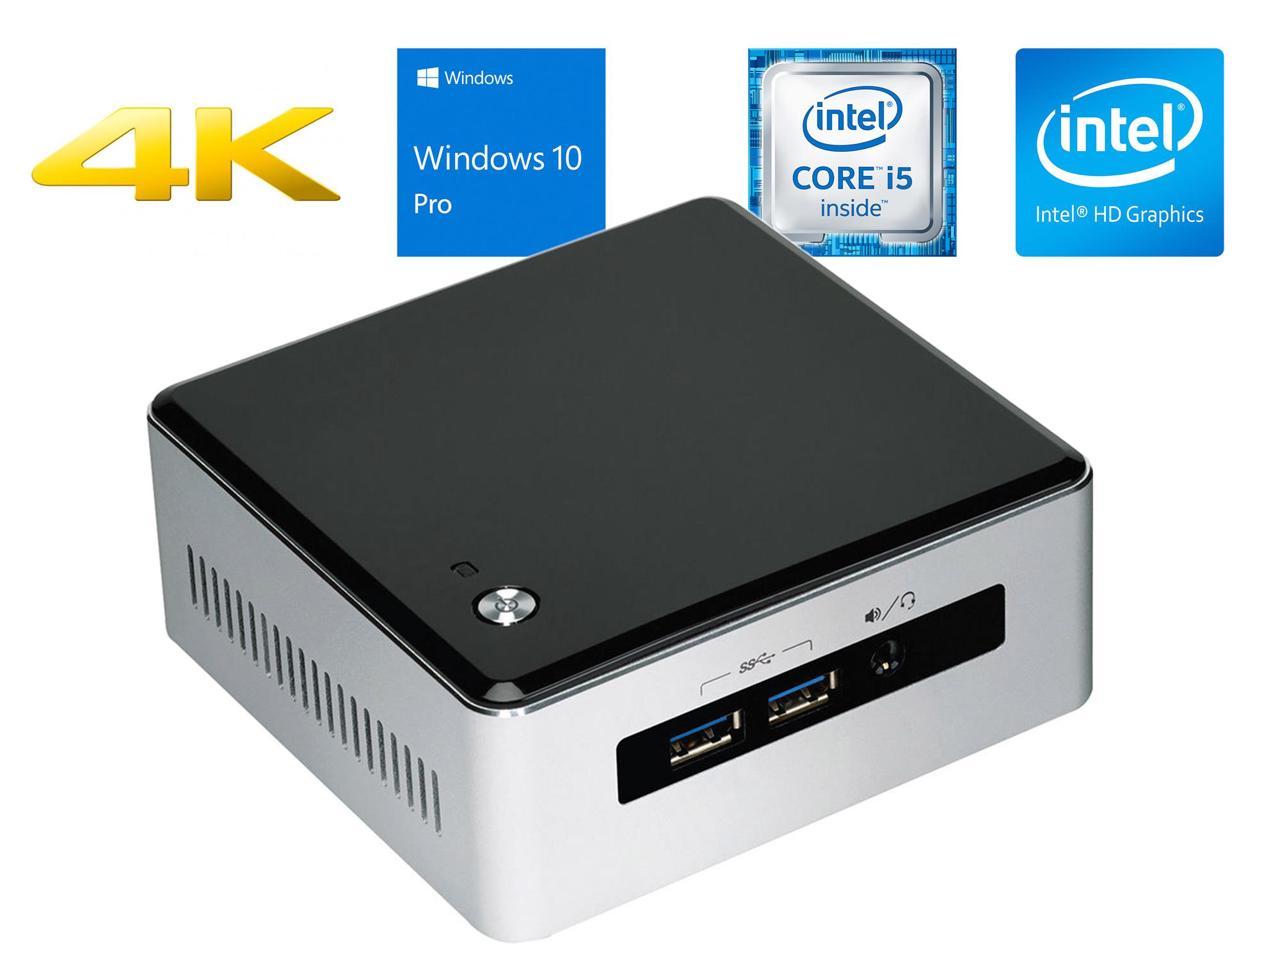 Intel NUC5i5RYH Mini Desktop, Intel Dual-Core i5-5250U Upto 2.7GHz, 4GB RAM, 512GB SSD, MiniDP, MiniHDMI, Wi-Fi, Bluetooth, Windows 10 Pro